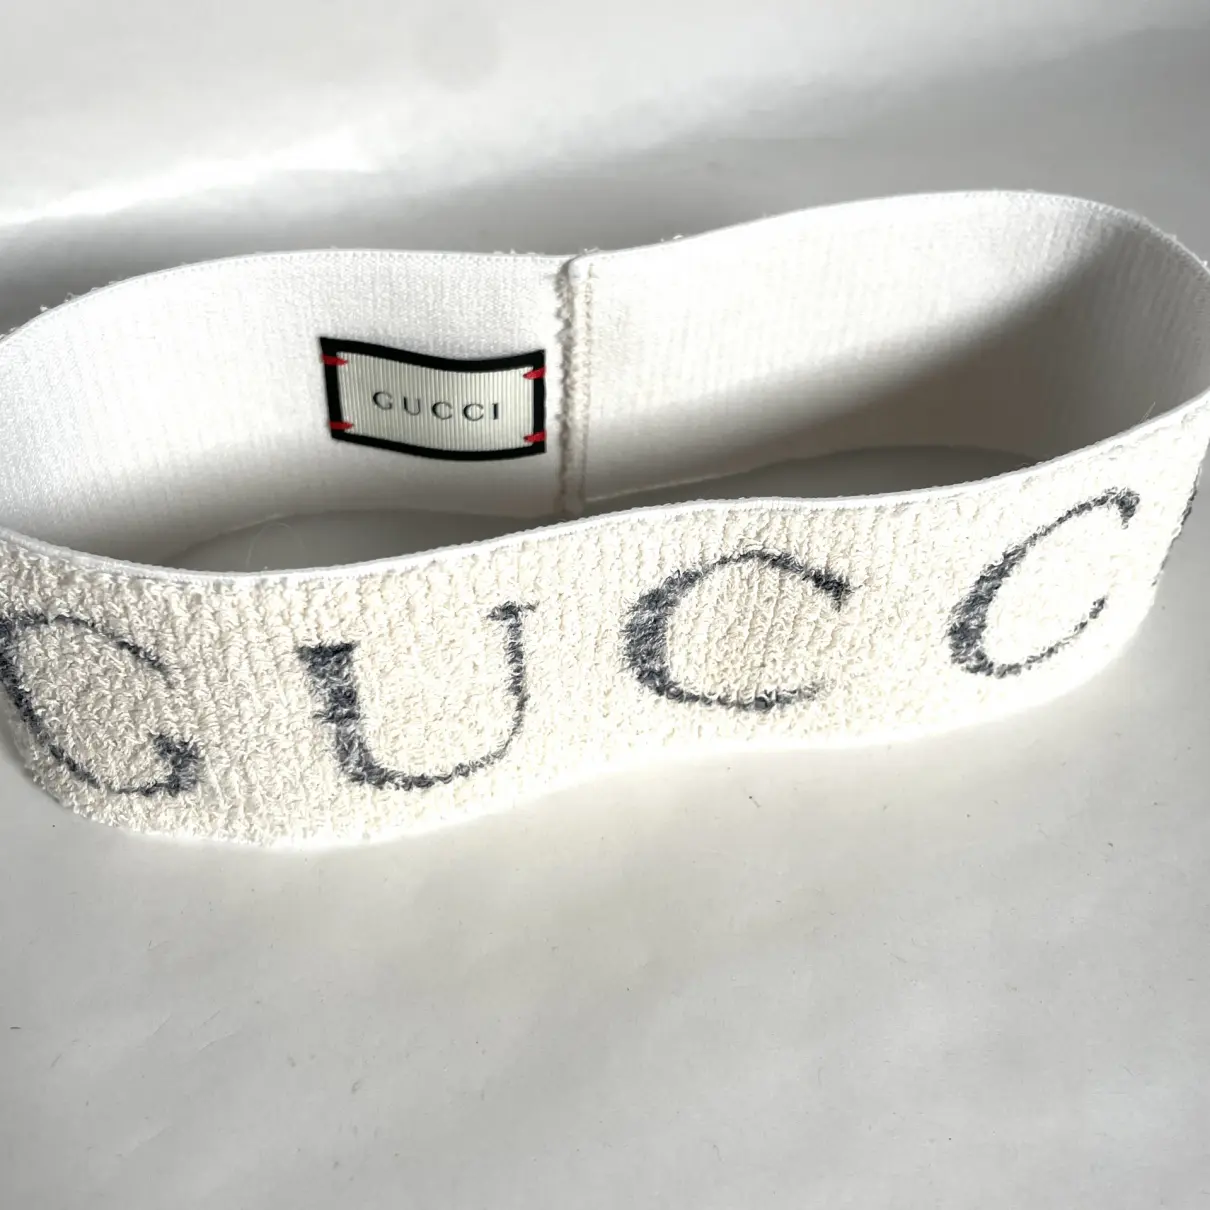 Silk hair accessory Gucci